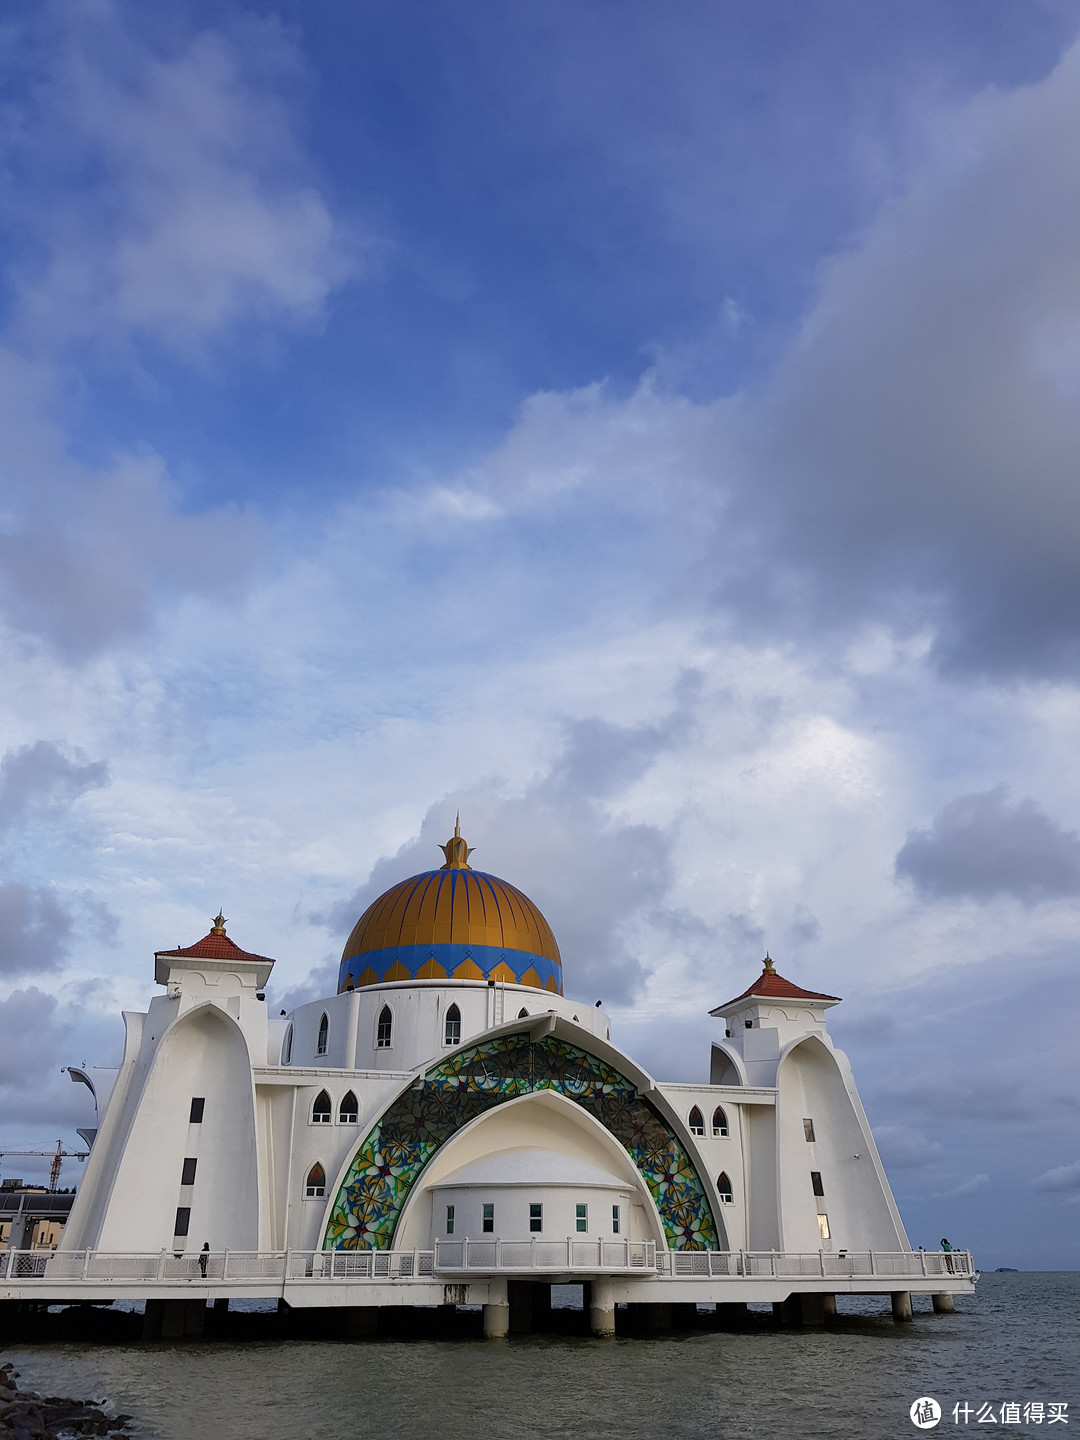 颜色鲜明的清真寺在水上特别耀眼